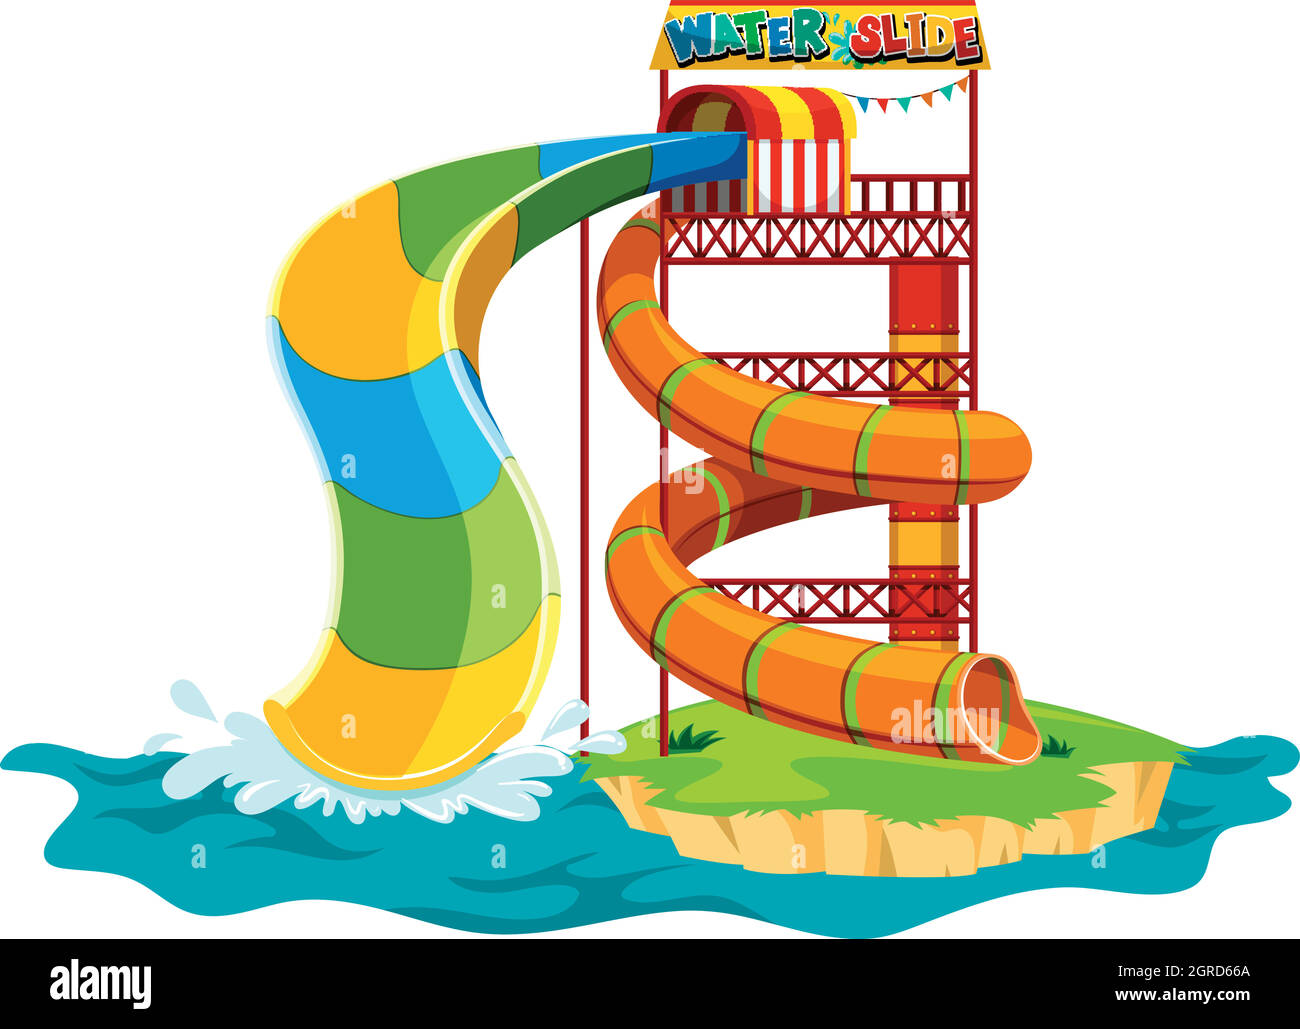 Water slide on island Stock Vector Image & Art - Alamy